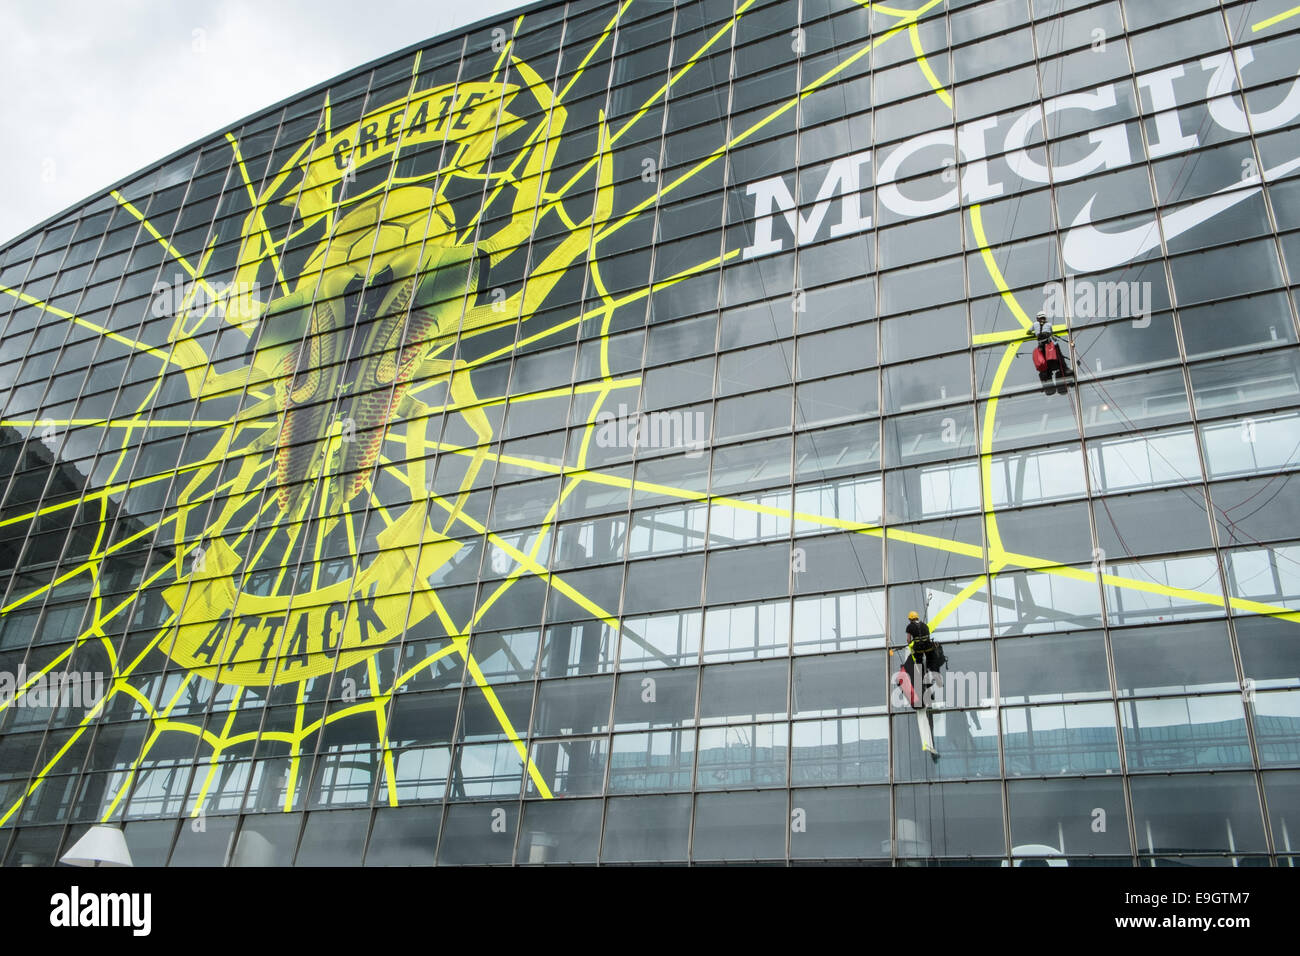 Große Nike Werbung für Magista Fußball Stiefel mit einem Spinnen-Netz  entstehen durch Abseilen Arbeiter auf der Glasfassade Stockfotografie -  Alamy